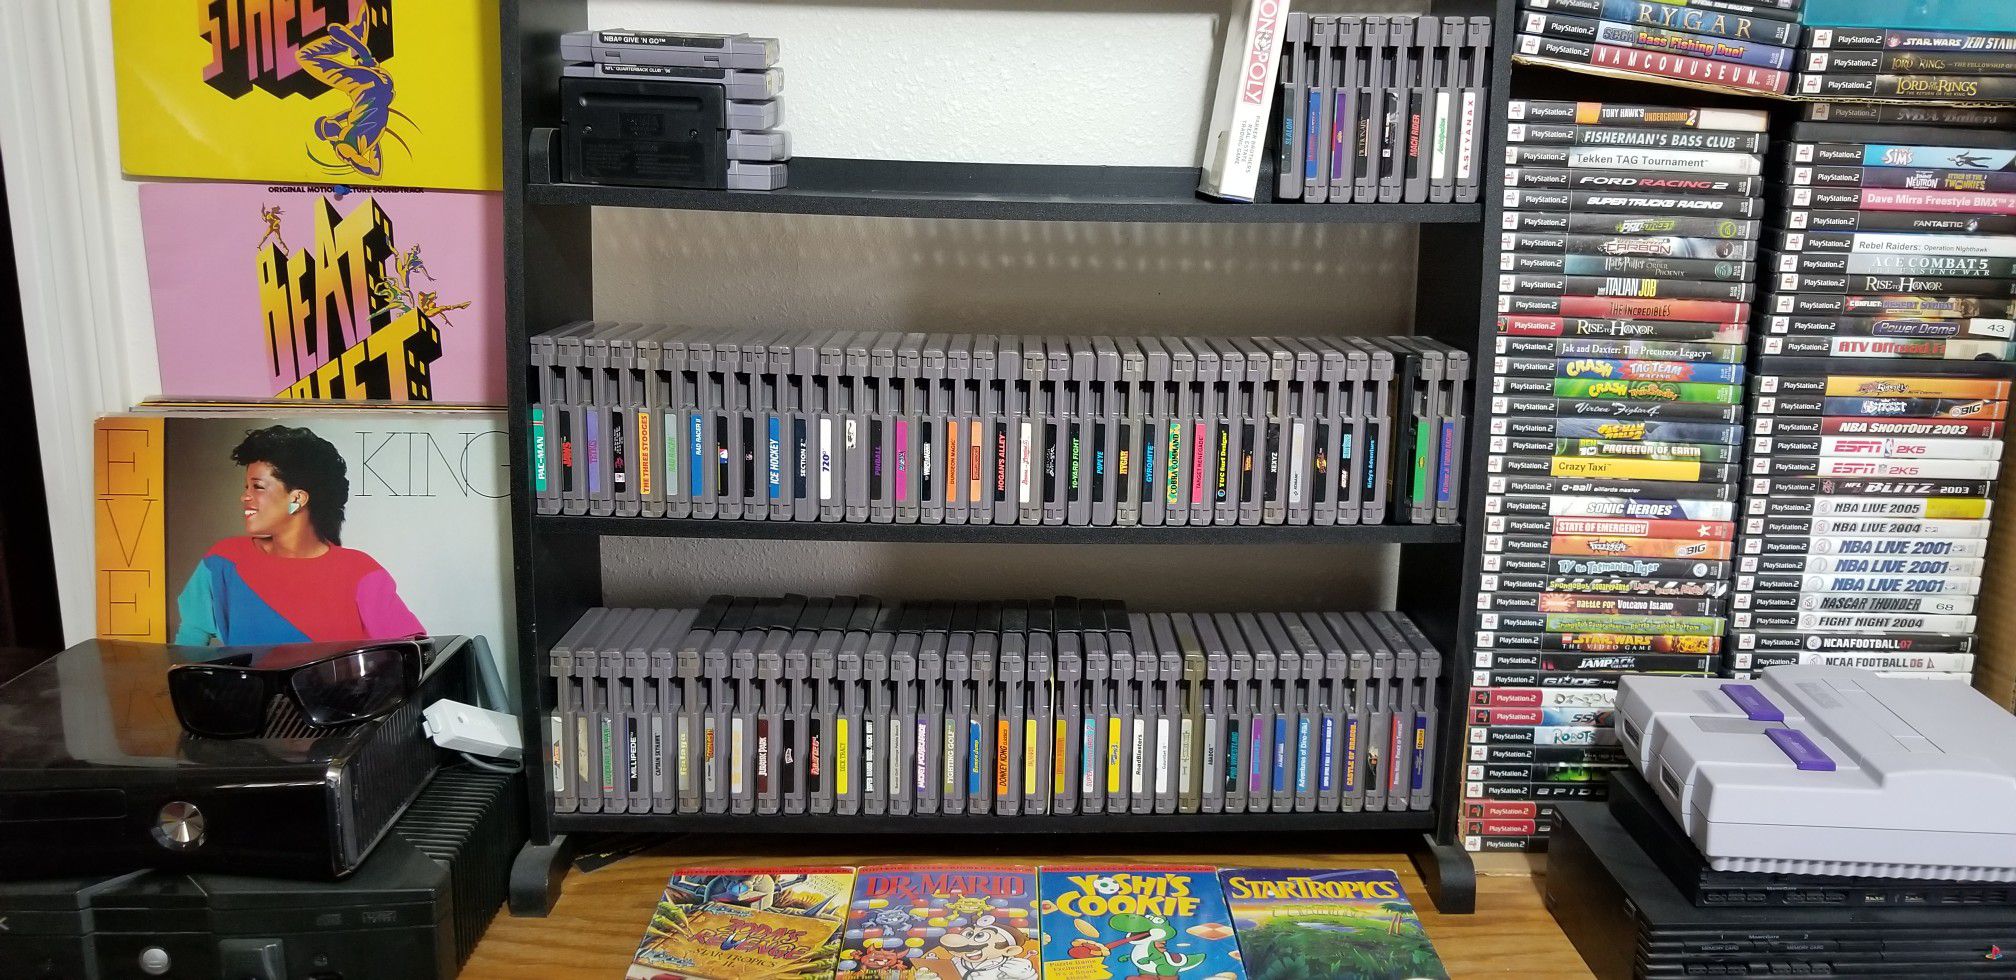 Nintendo Game Cartridges